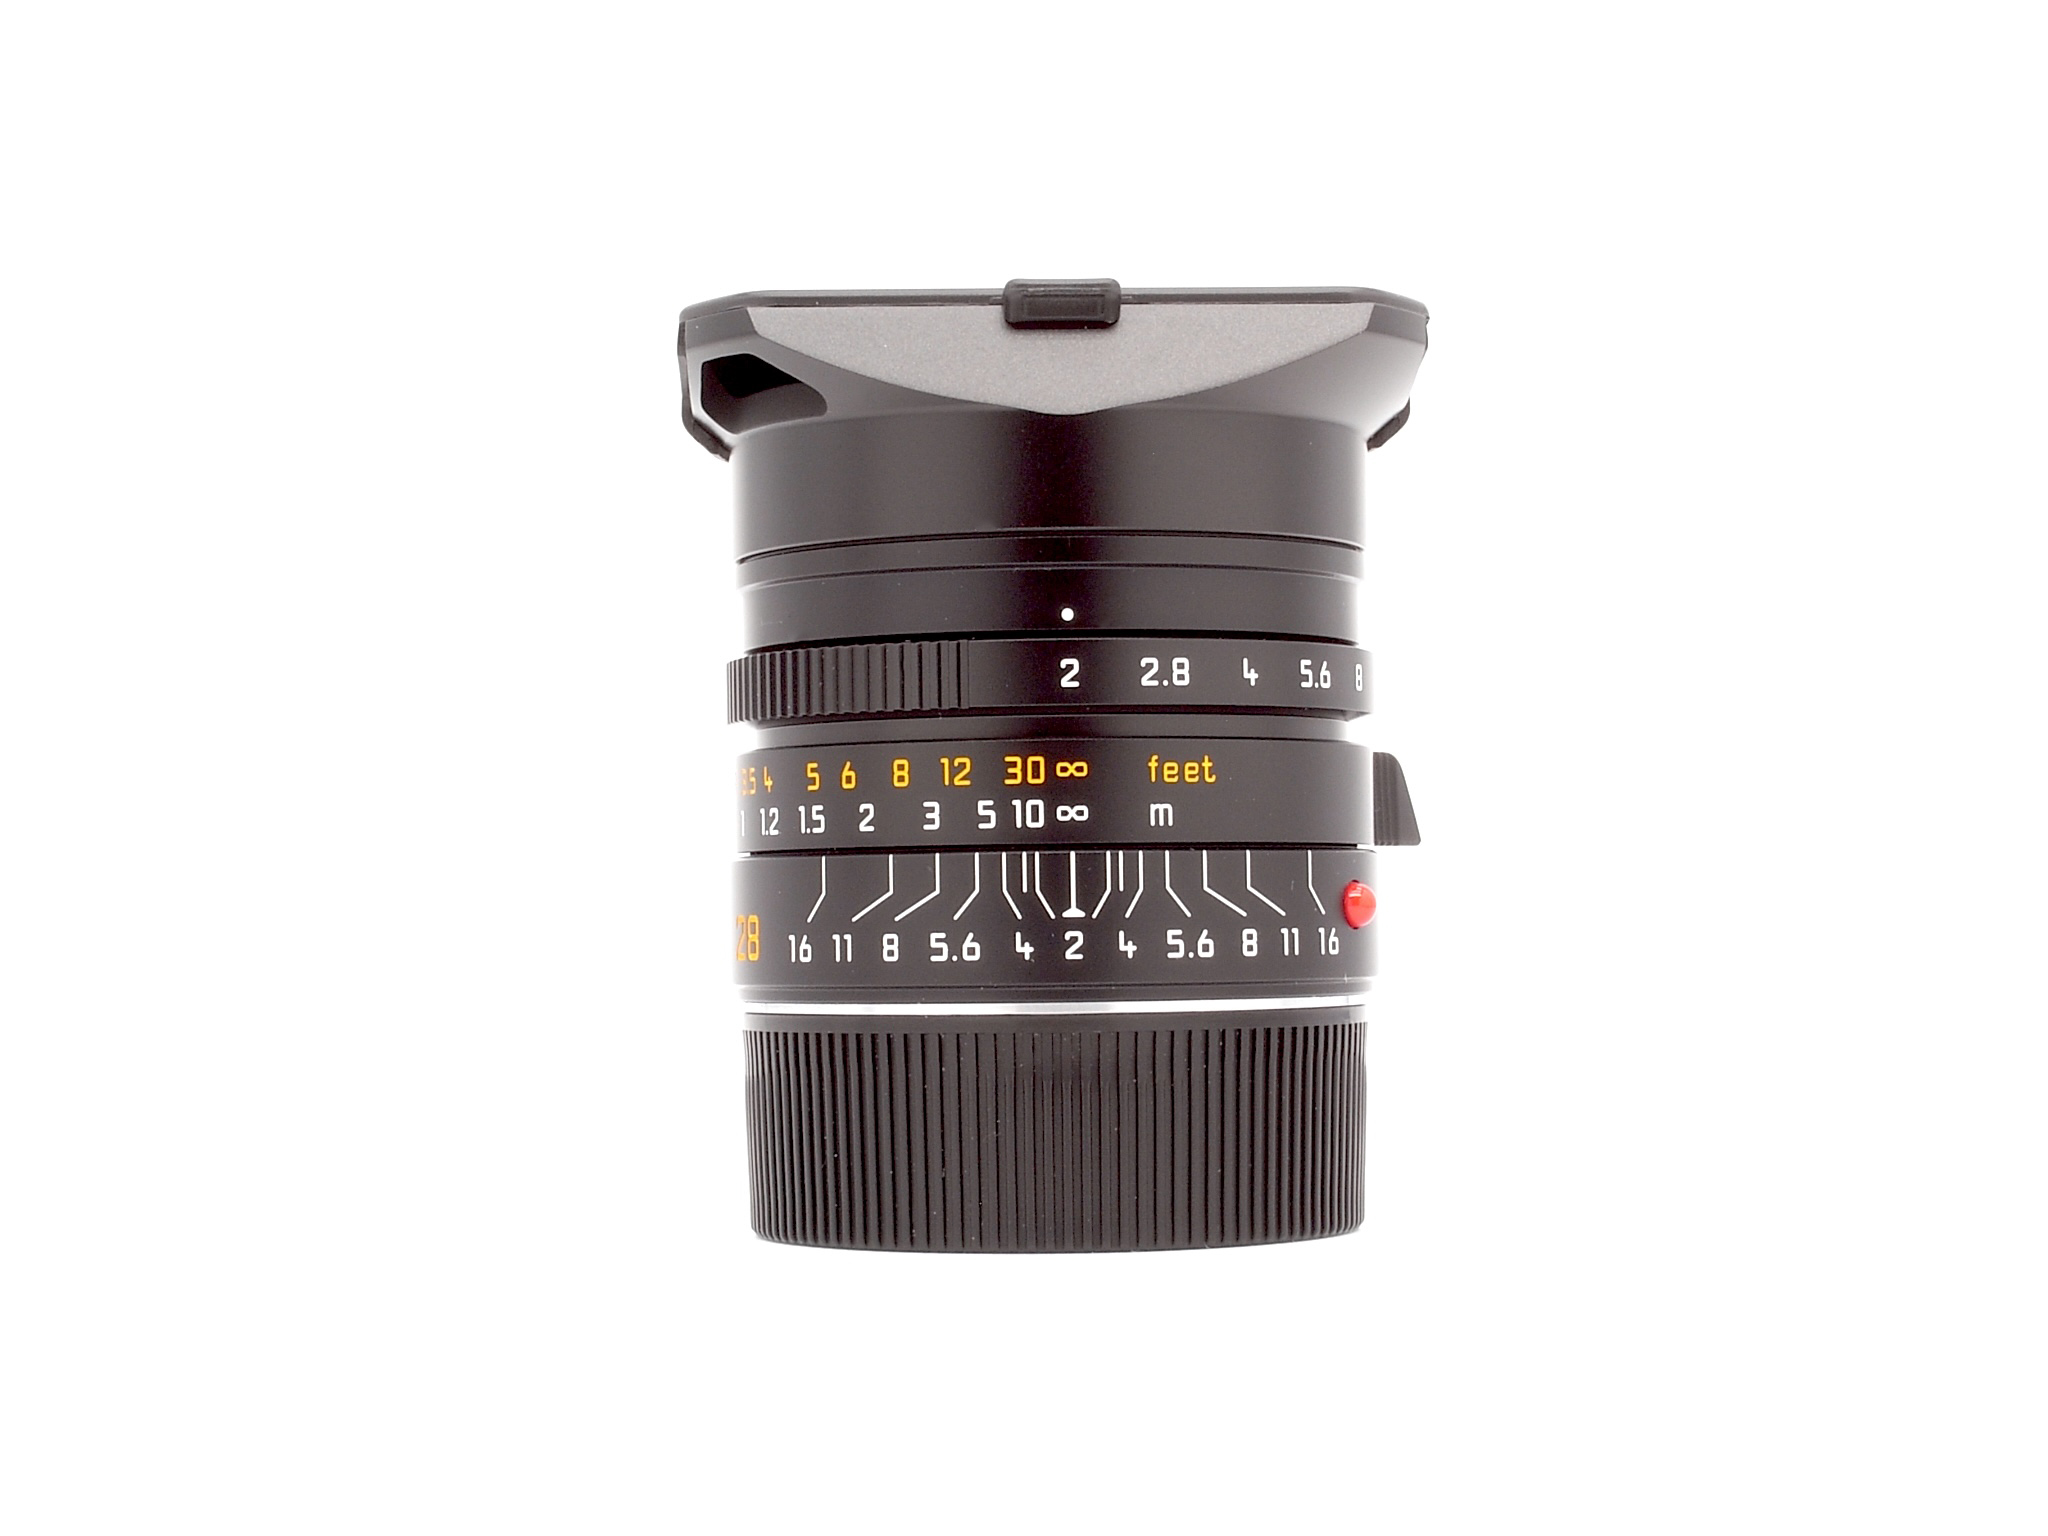 Leica Summicron-M 2,0/28mm ASPH. schwarz eloxiert 6Bit